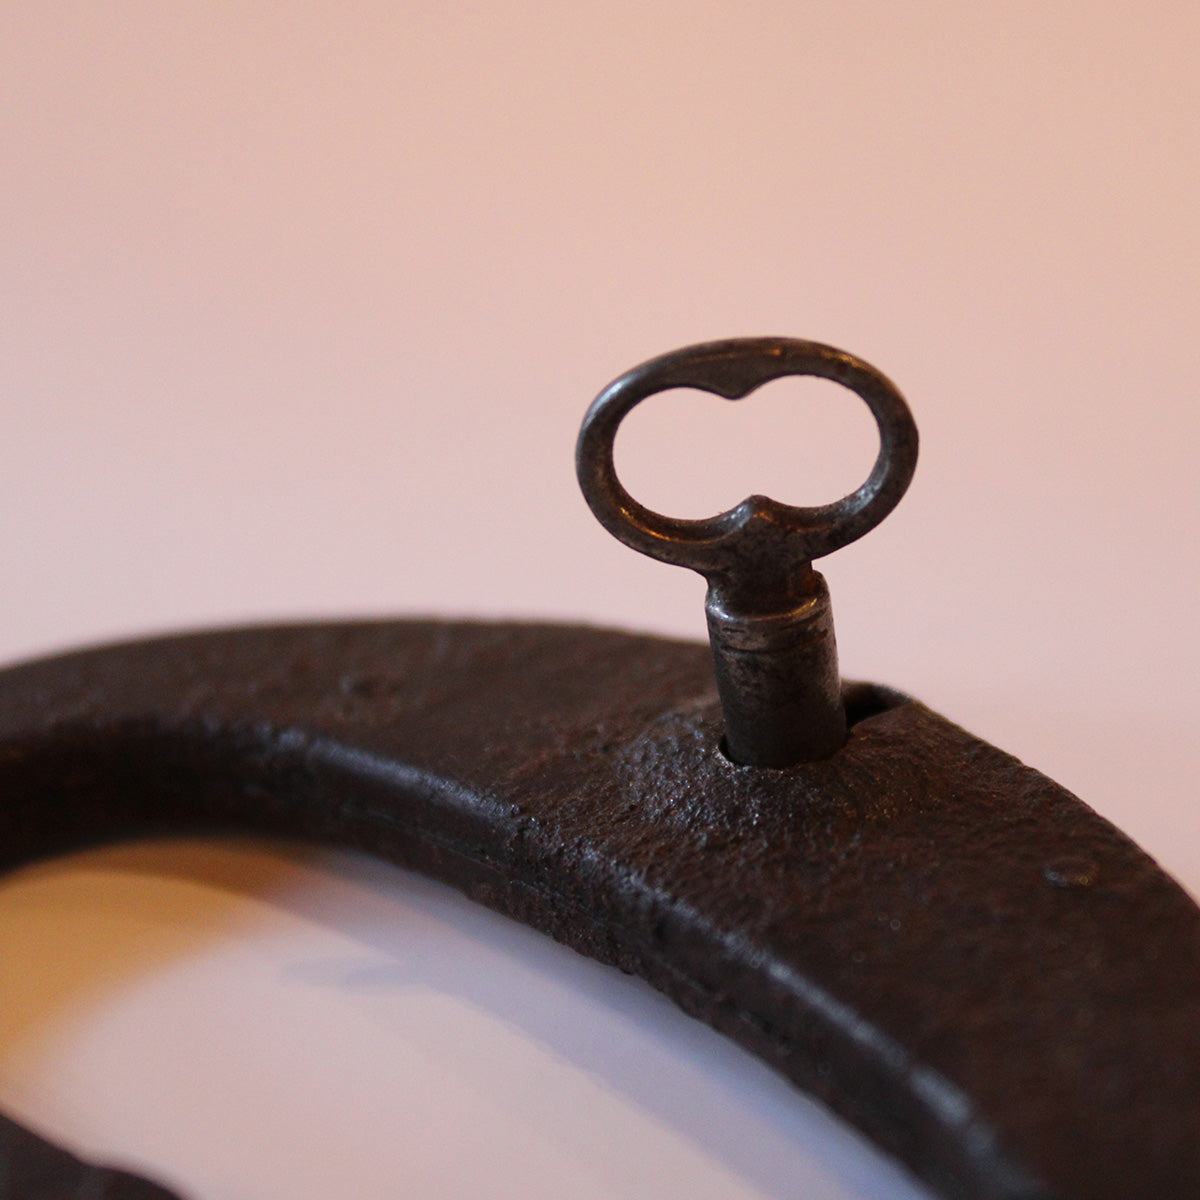 Hængelås antik fremstillet af smedet og stanset jern